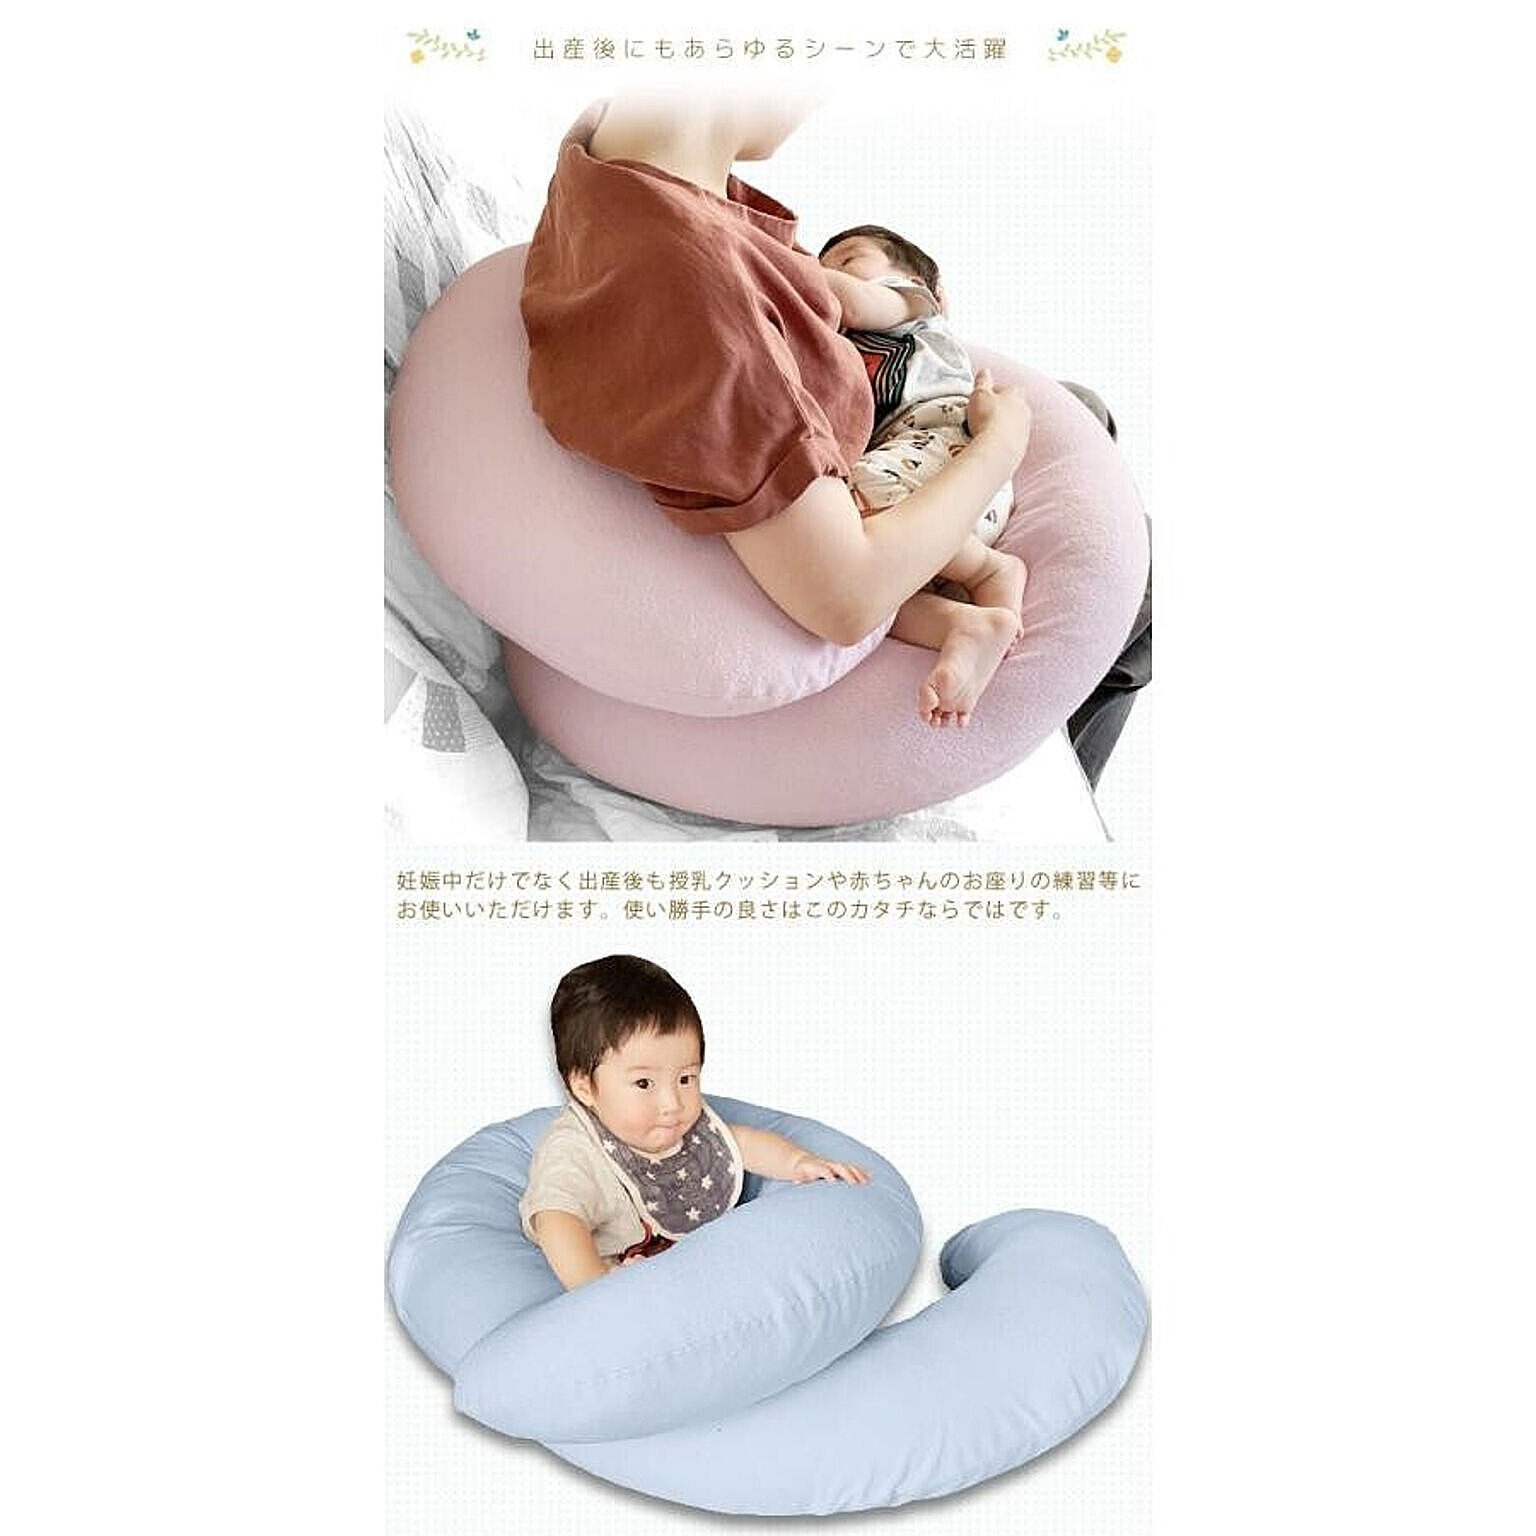 【色: ダークグレー】C型抱き枕 妊婦 人気 マタニティーだきまくら 授乳クッシ